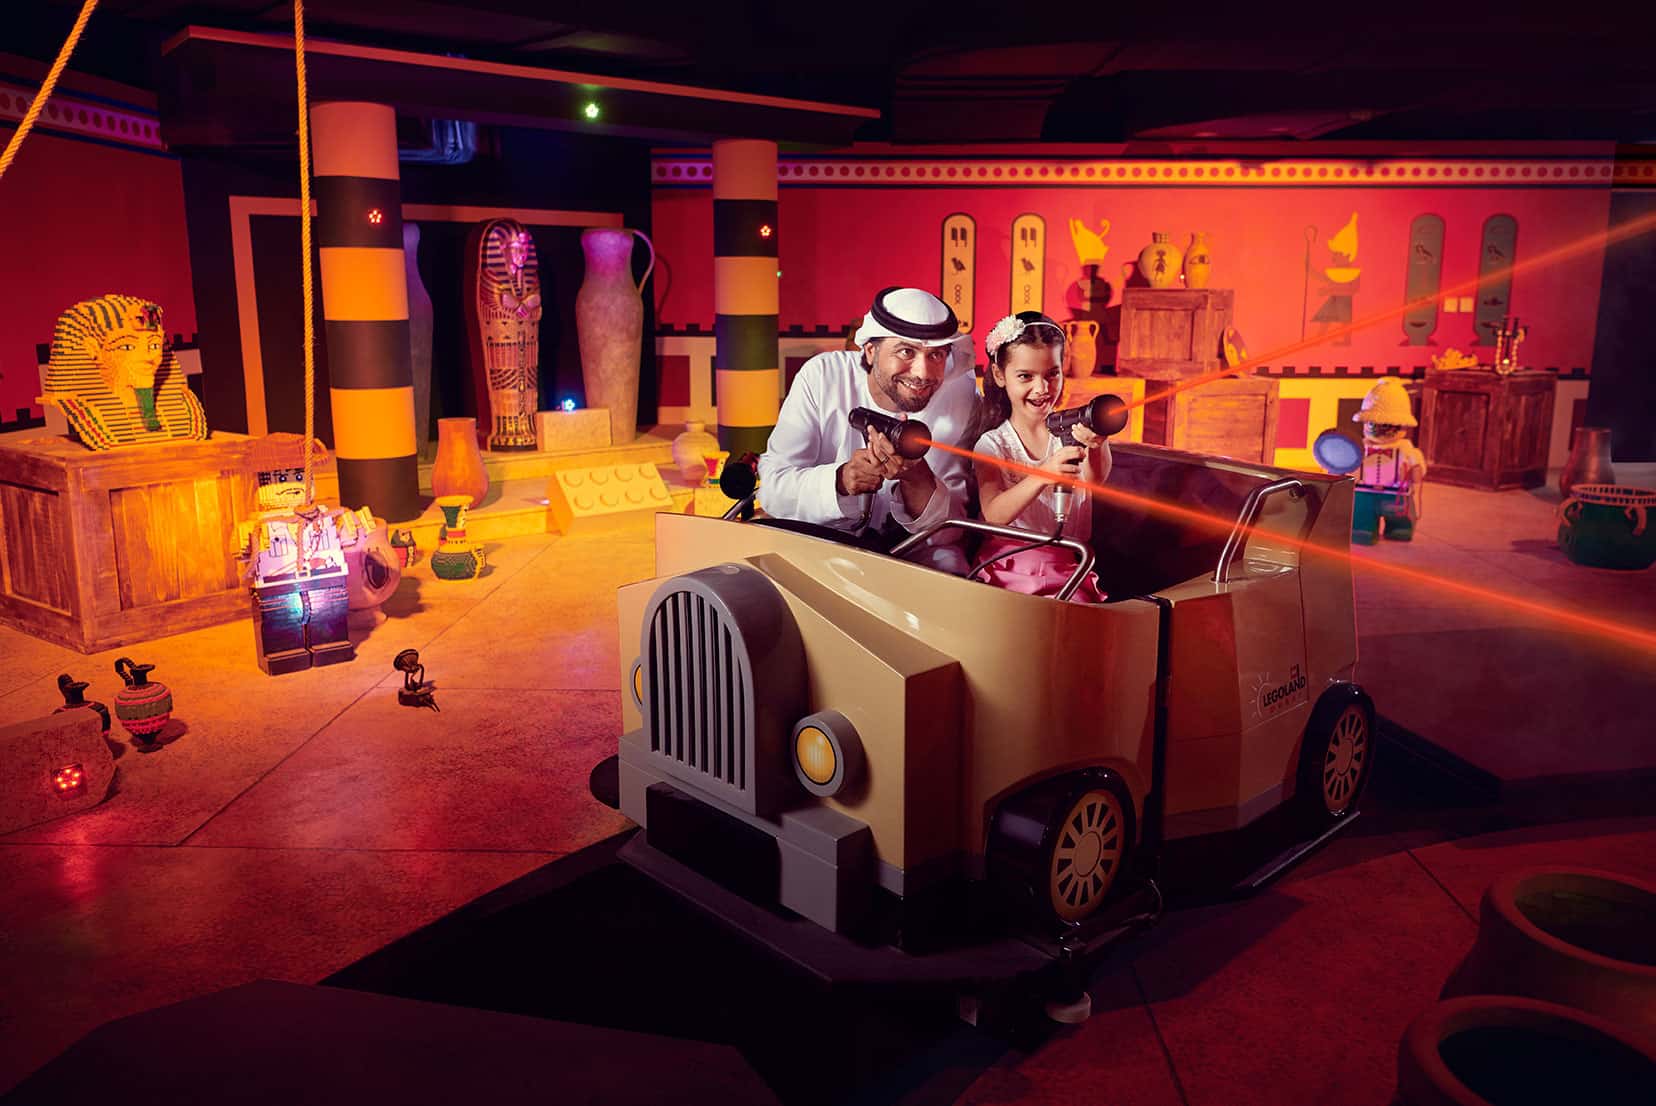 Indoor destinacije u Dubaiju pružaju atmosferu punu zabave, interaktivnih aktivnosti i zabave koja oduševljava djecu